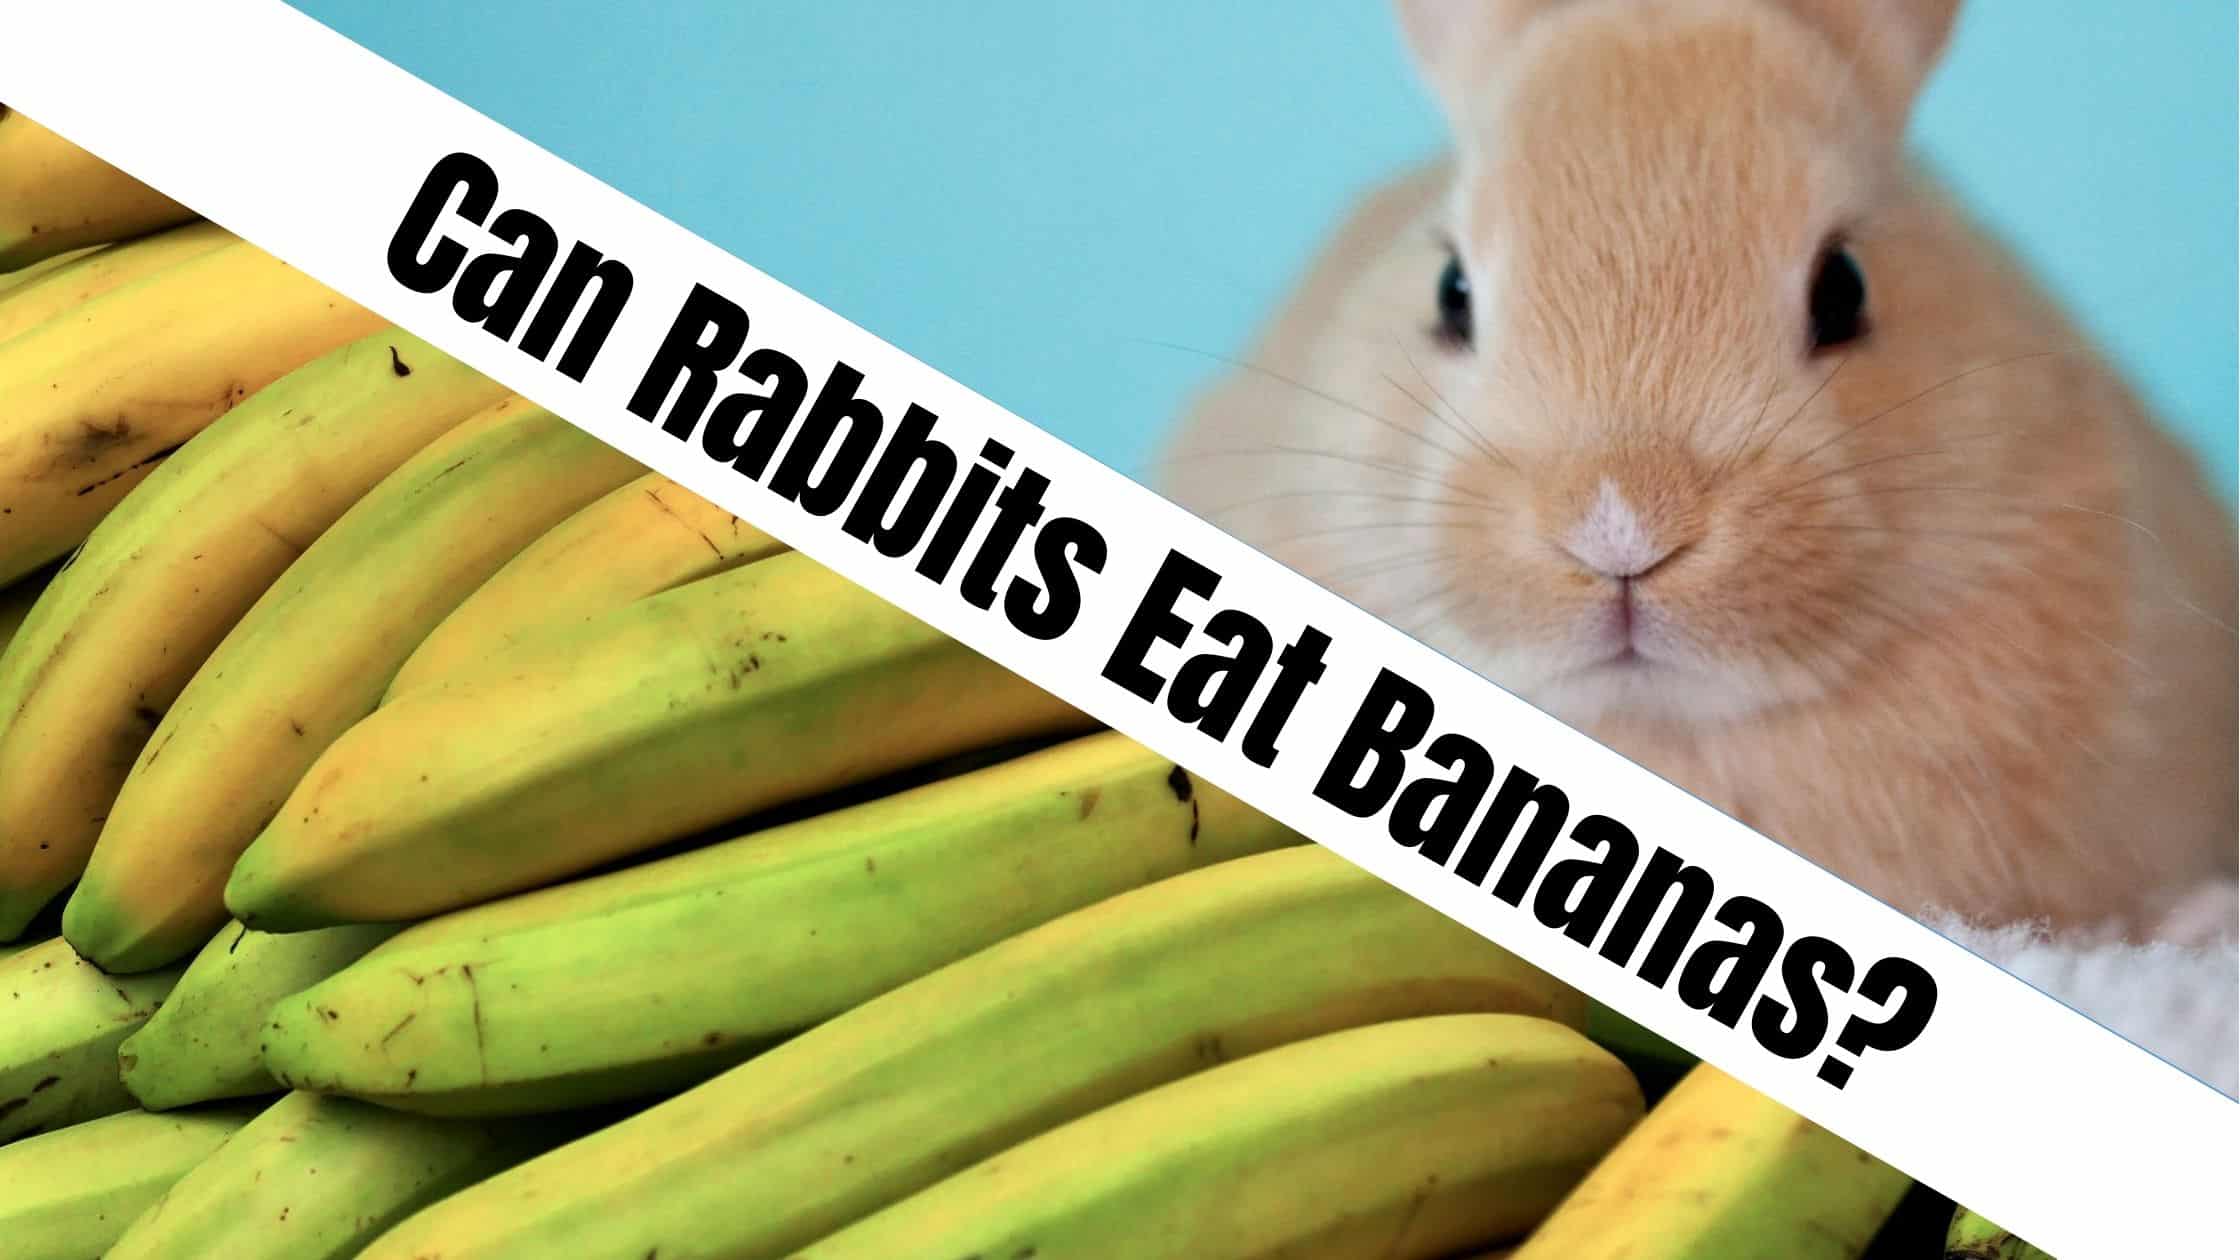 Can Rabbits Eat Bananas?